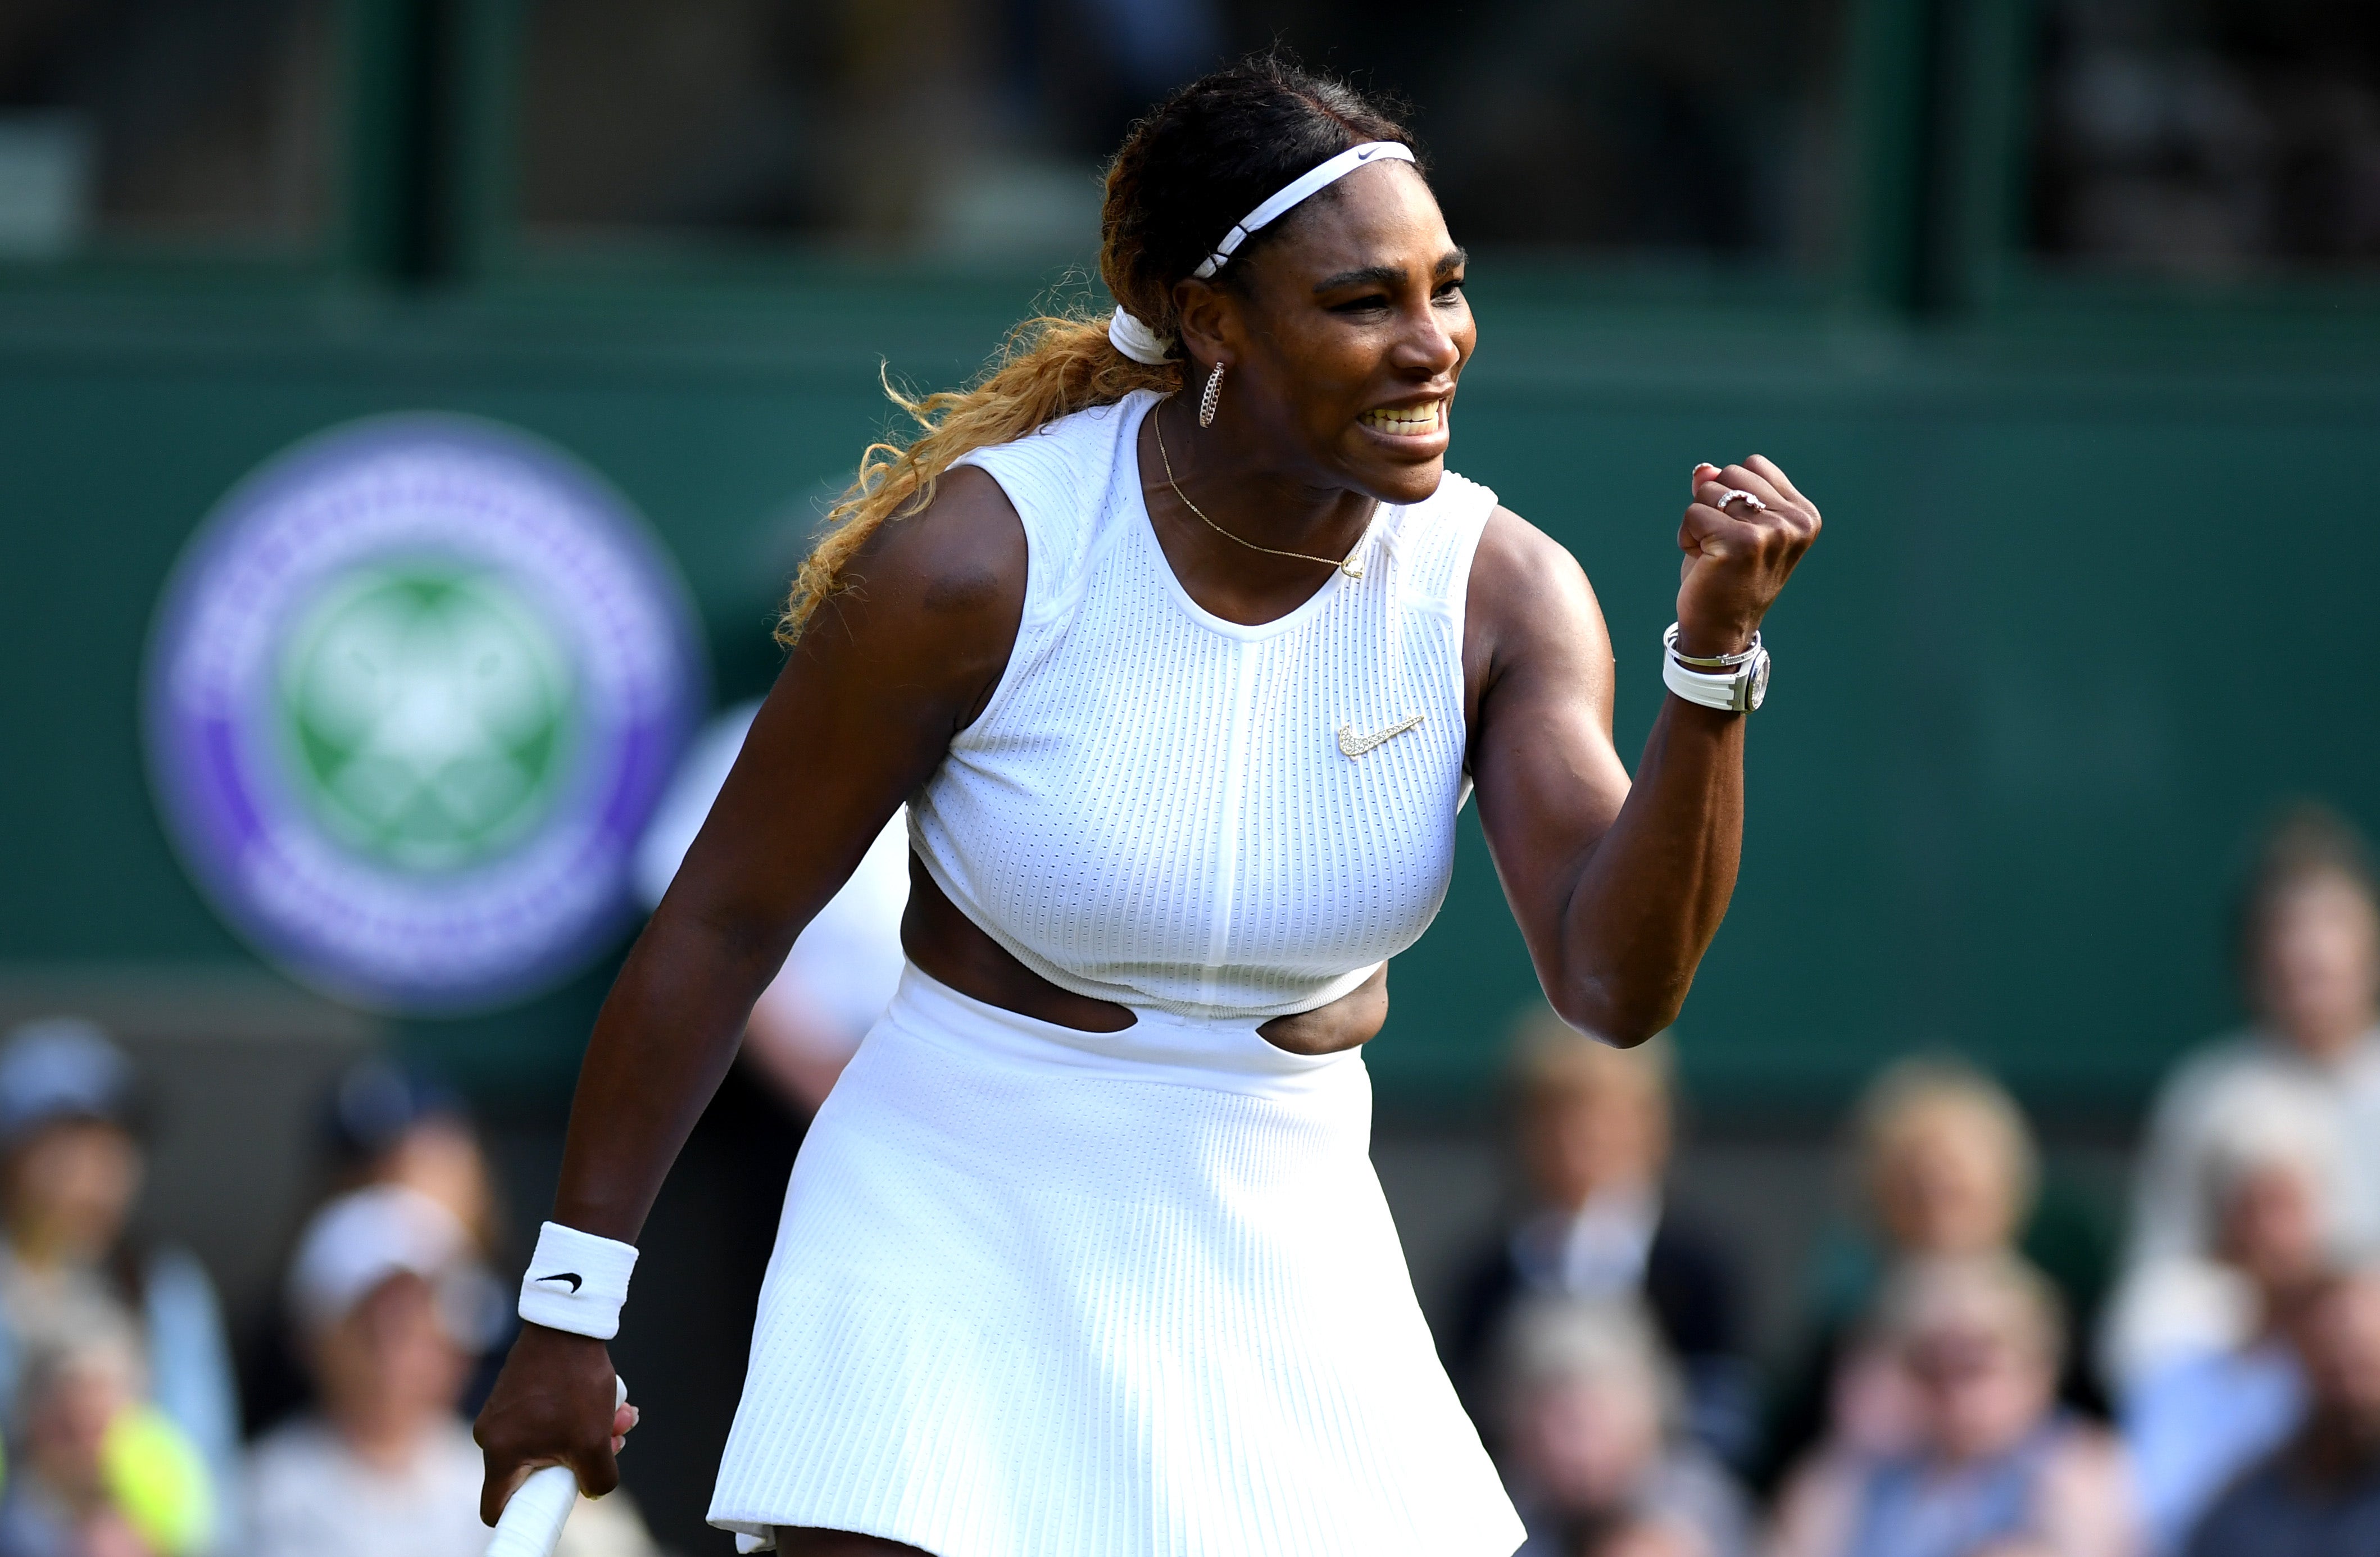 Serena Williams special Nike 'Broosh' at Wimbledon | Fox News